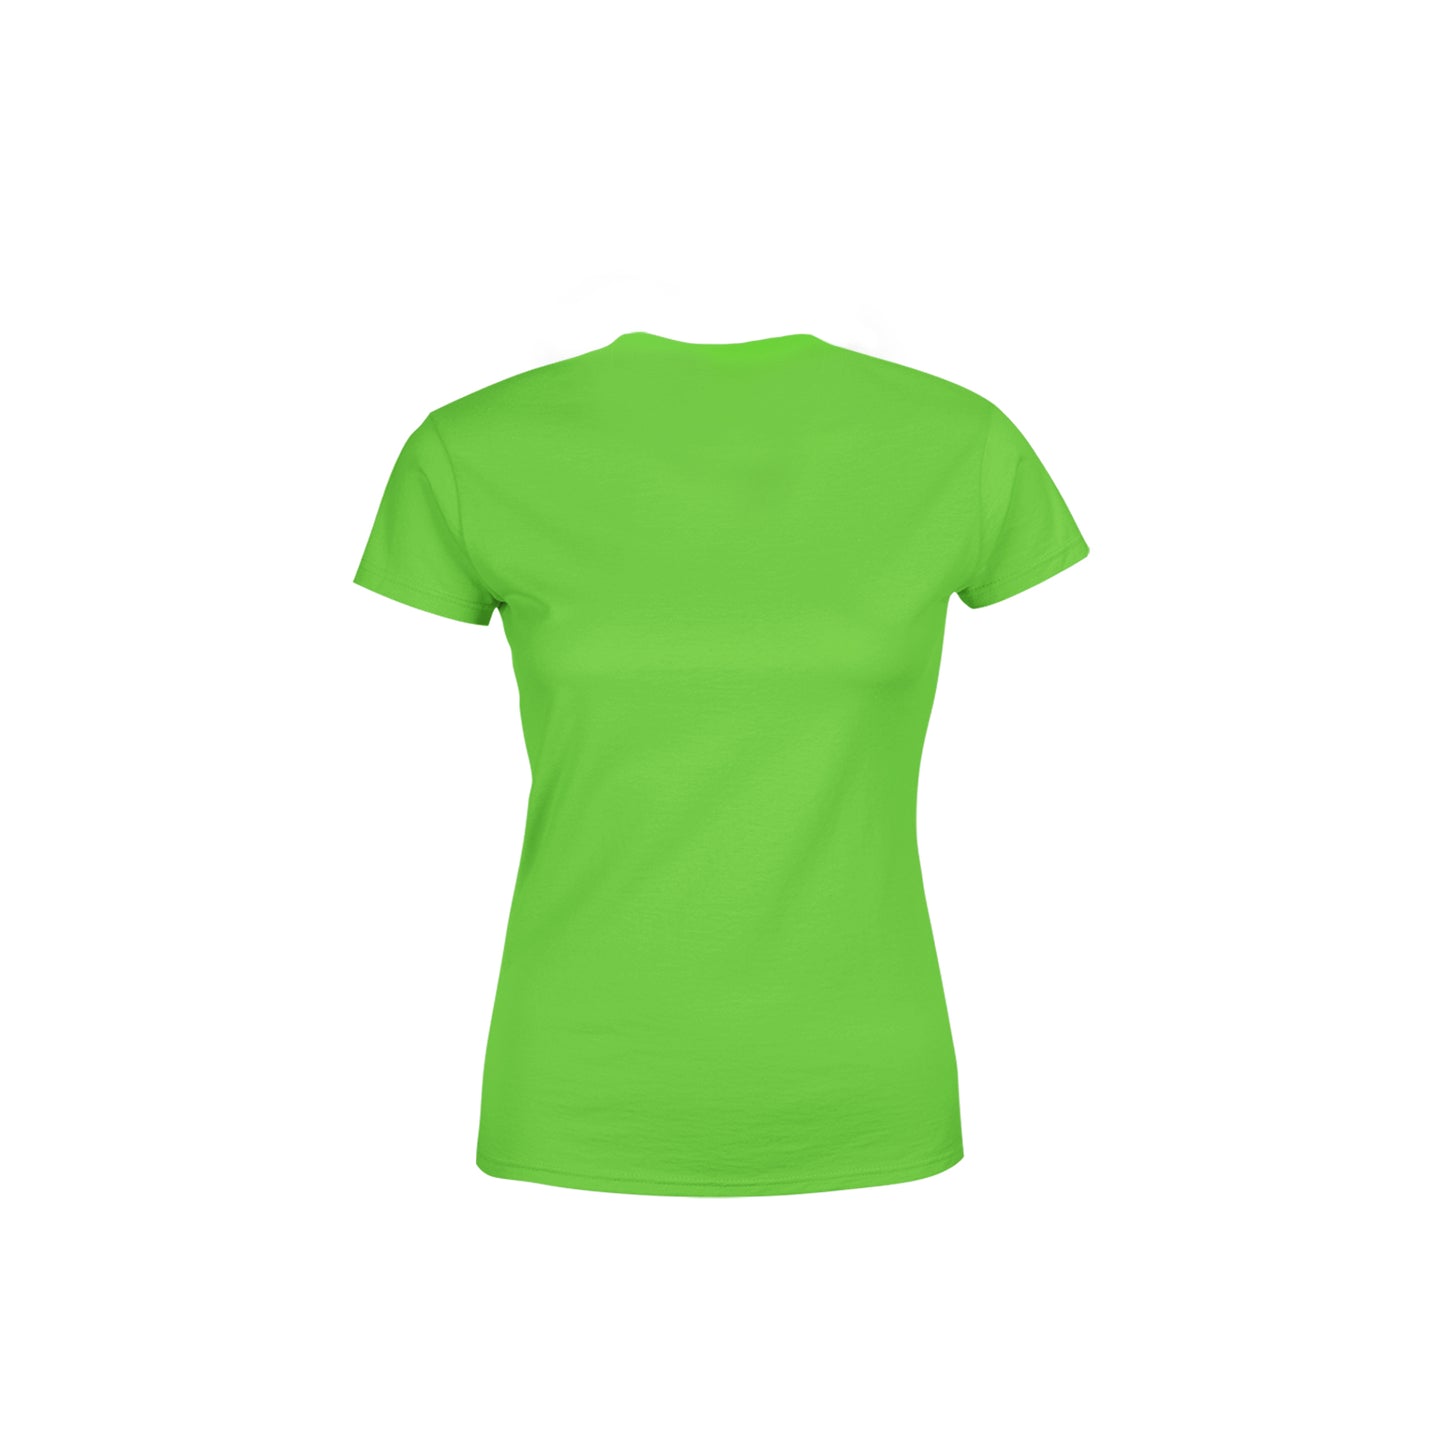 84 Number Women's T-Shirt (Liril Green)